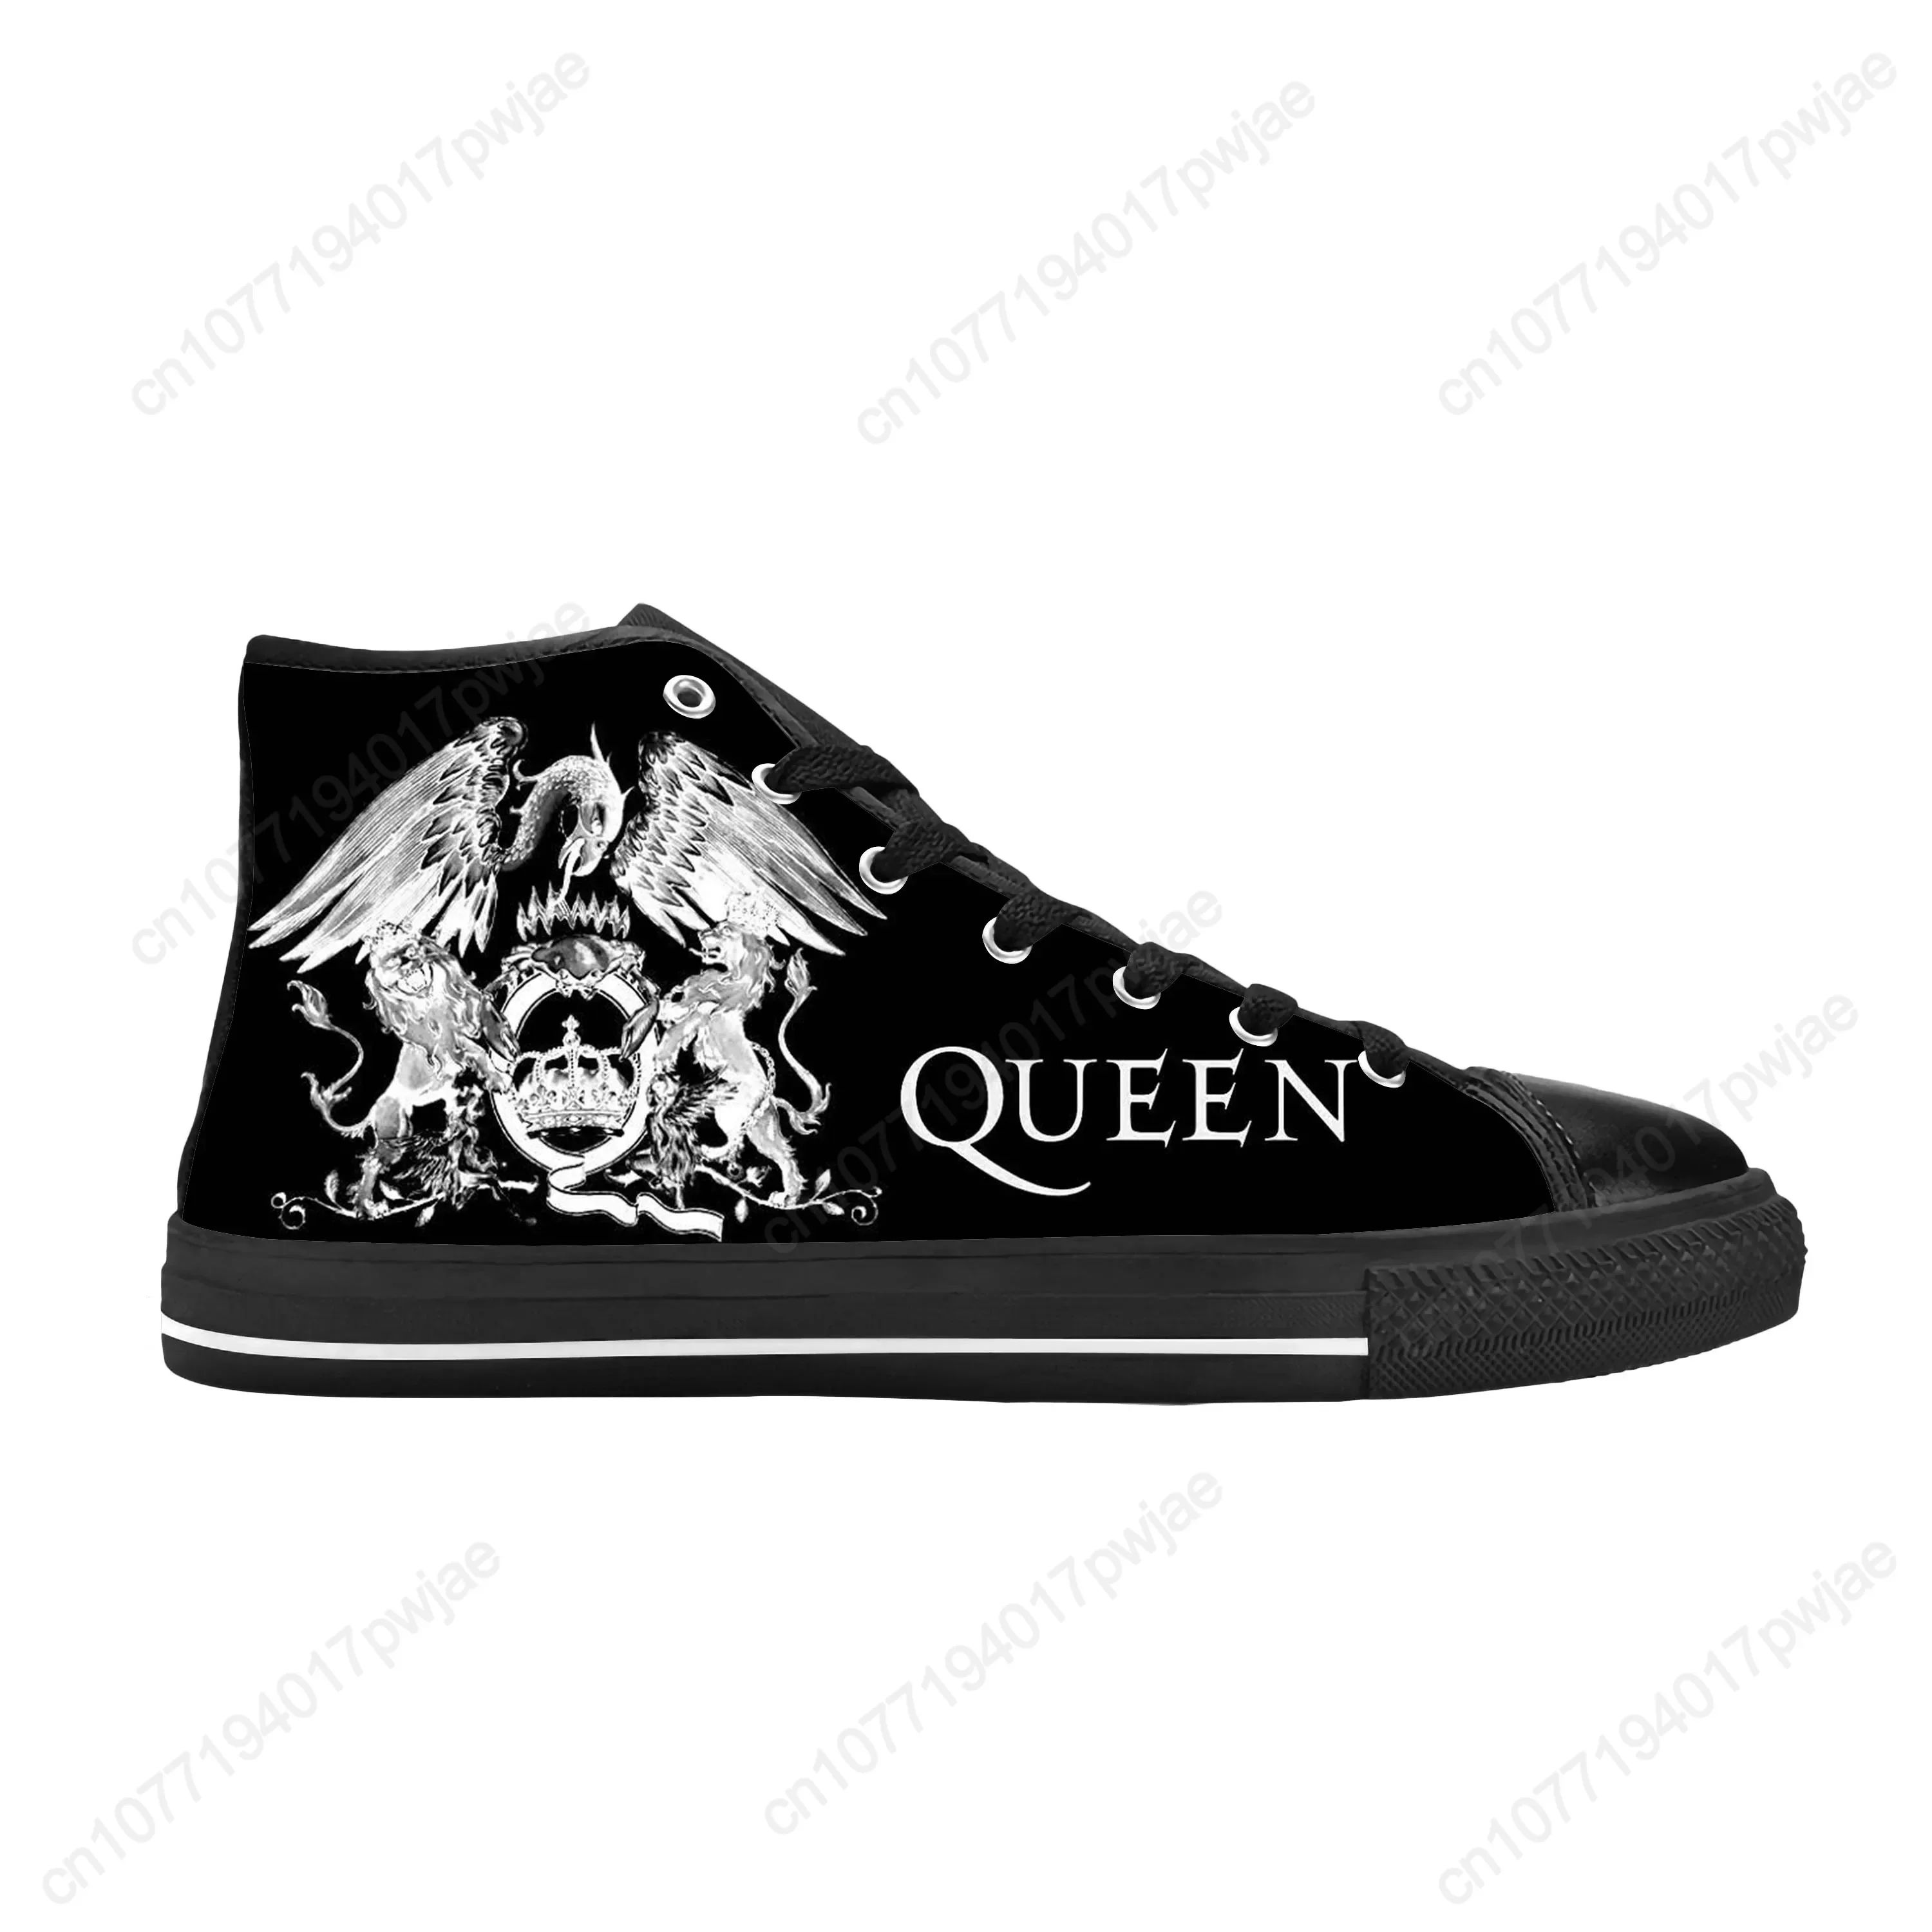 Color:Queen14Shoe Size:10.5